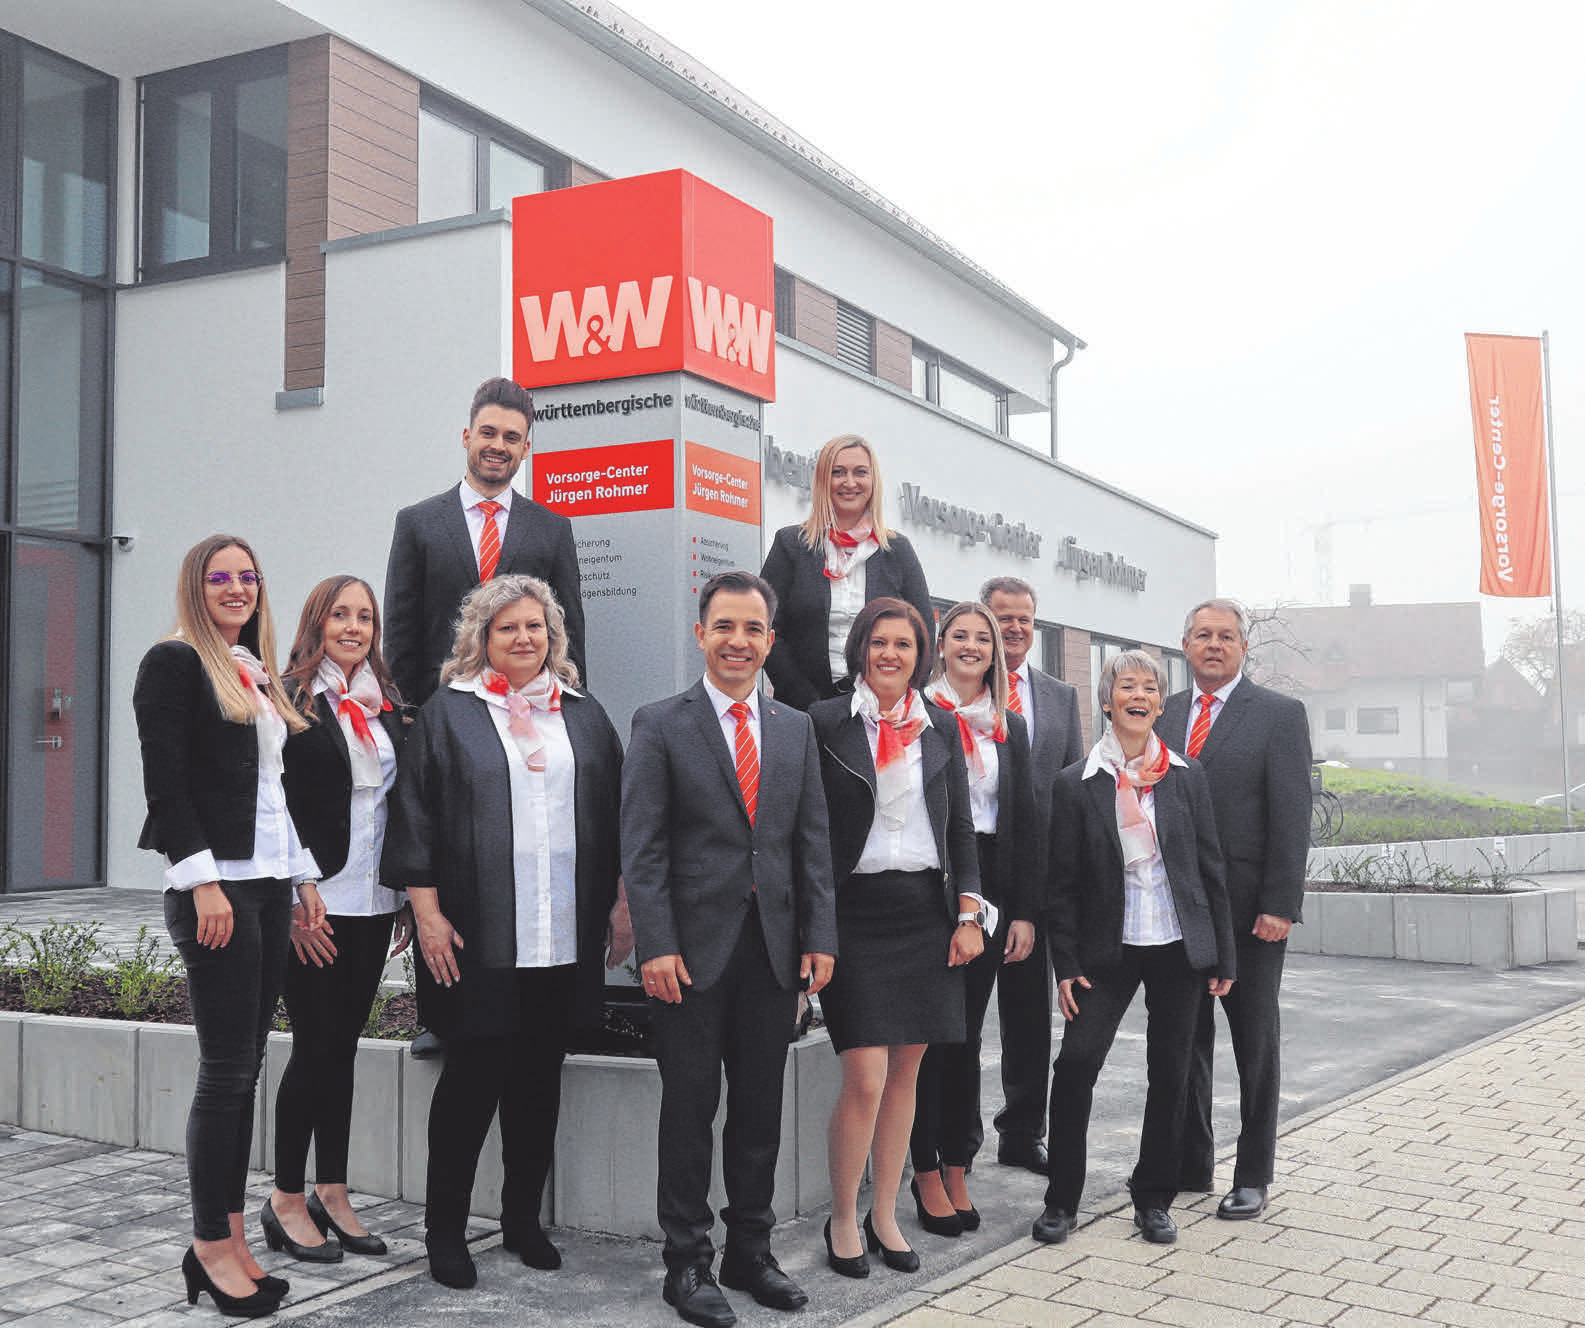 Württembergische Versicherungsbüro Jürgen Rohmer in Schwendi: Einweihung und offizielle Eröffnung